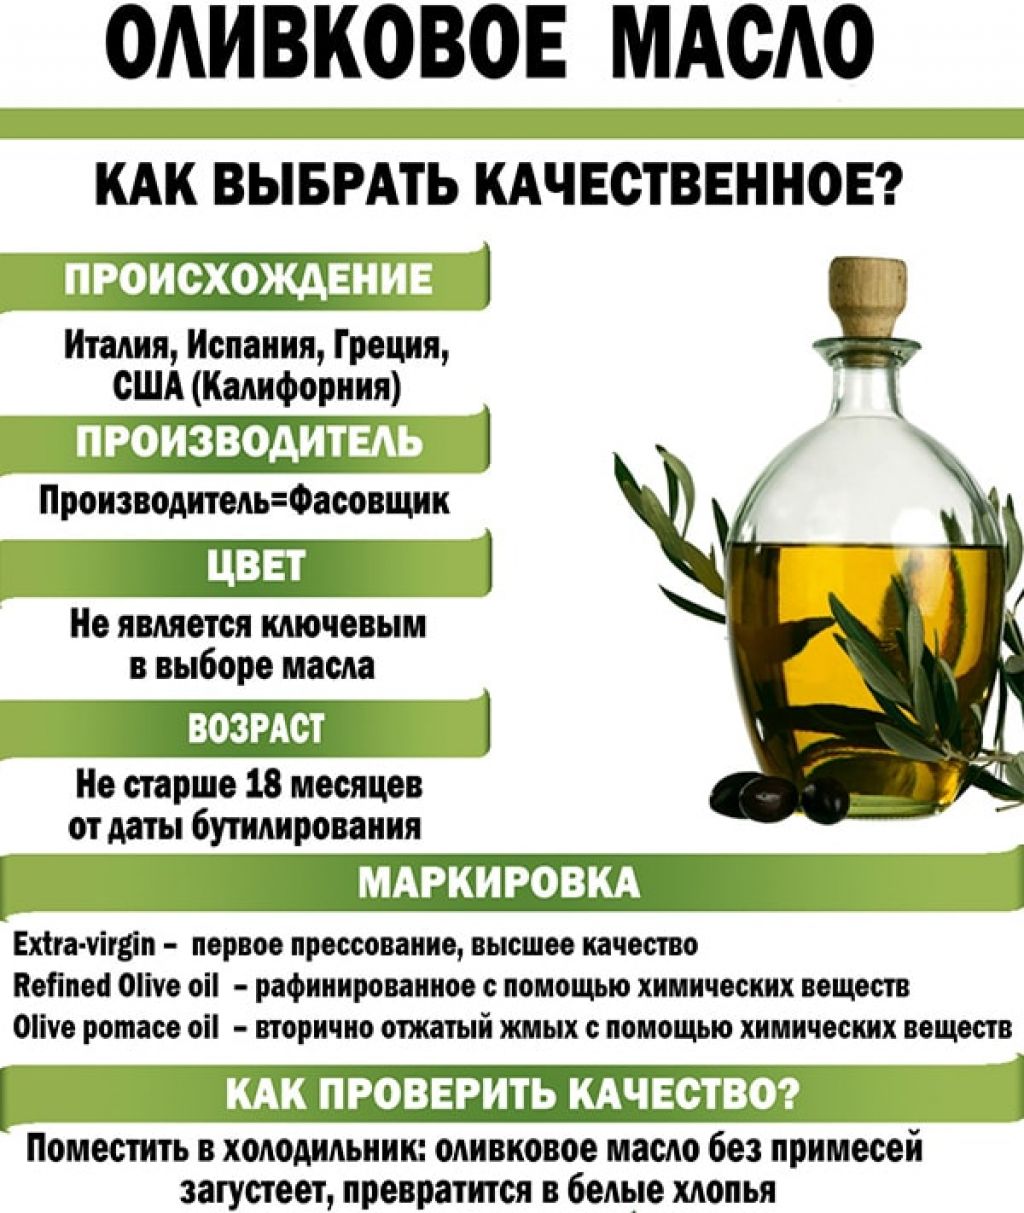 Оливковое масло для кожи лица — средиземноморский рецепт красоты